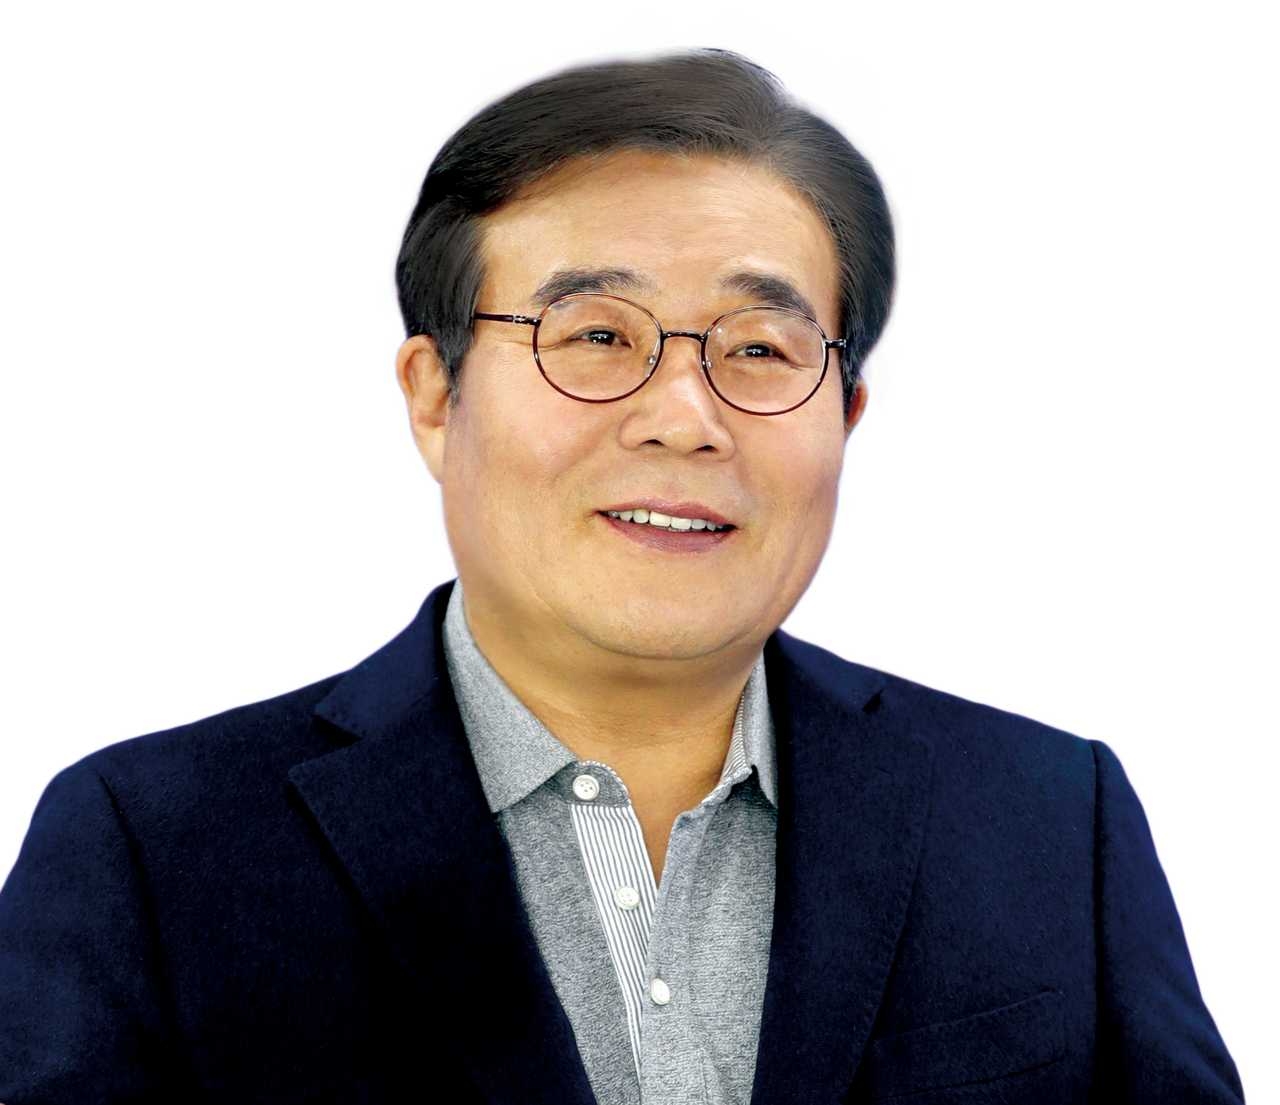 이병훈 의원, ‘문화재 분야 정책연구기관 설립법안’ 발의